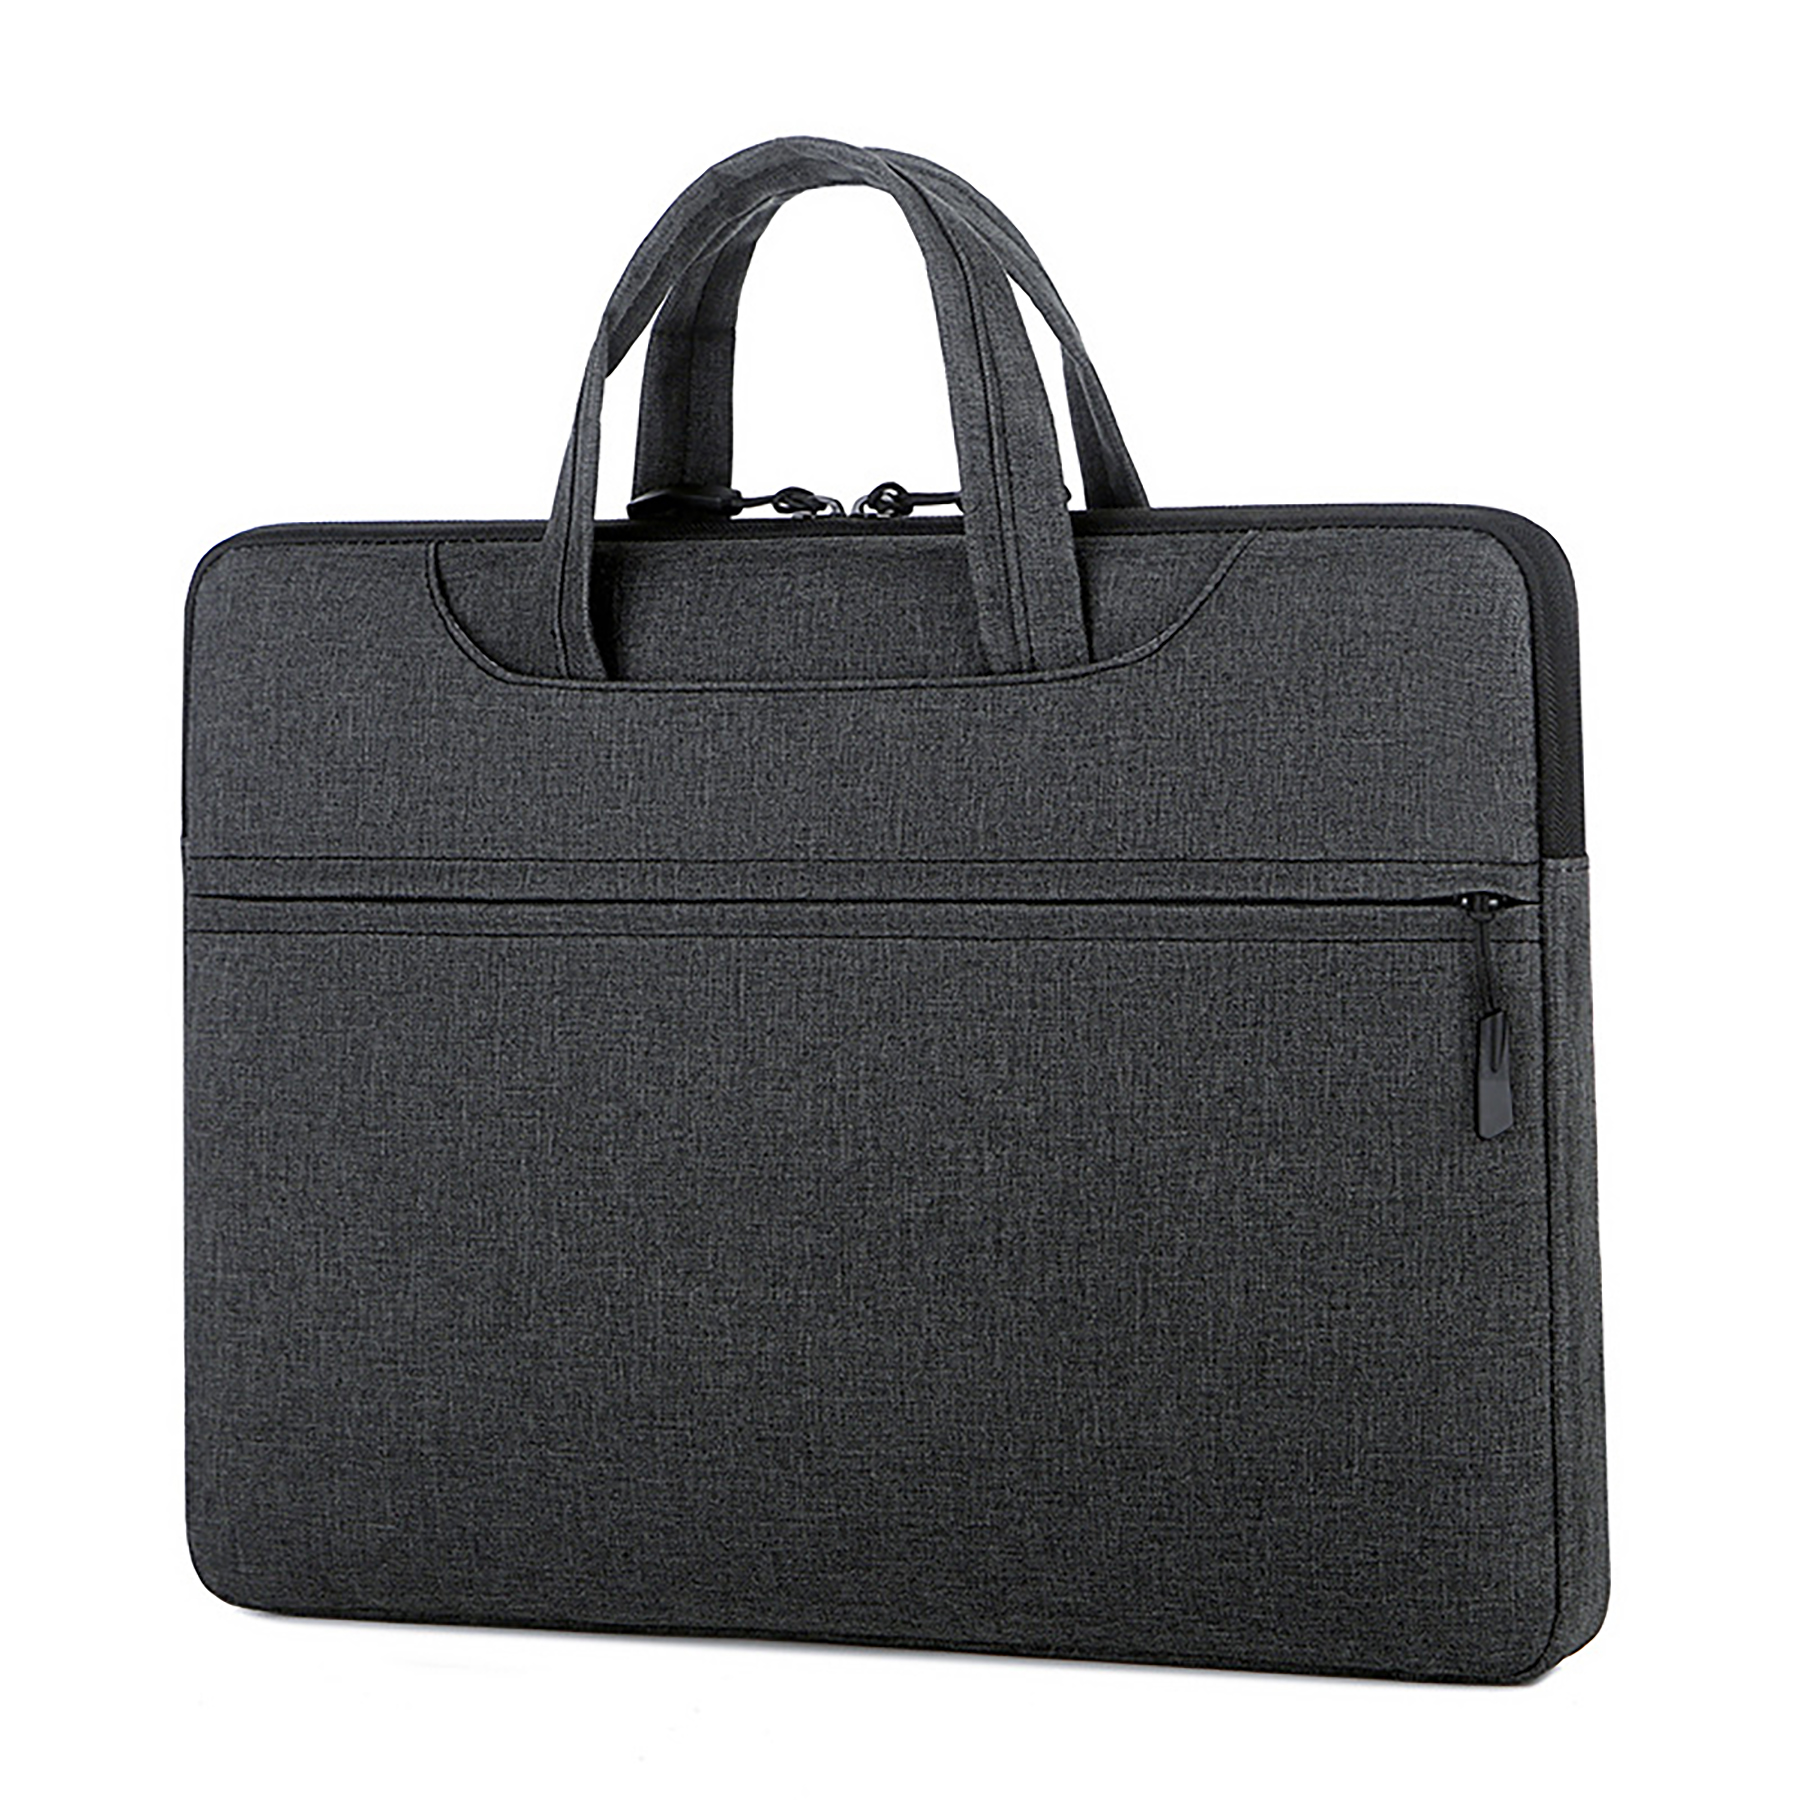 15.6 inch Laptop Shoulder Bag with Adjustable Shoulder Strap